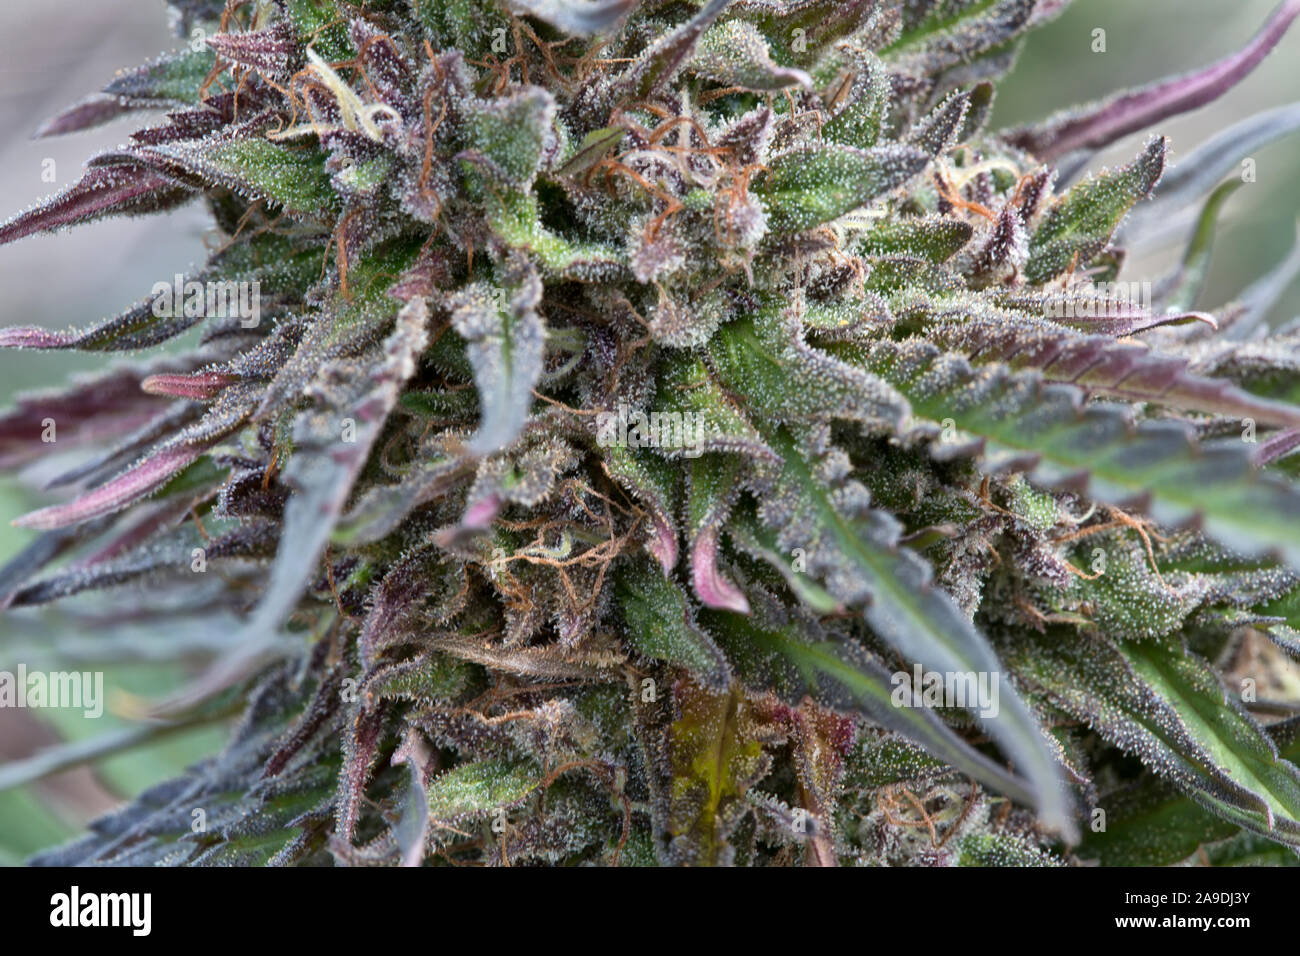 Chanvre biologique uver 'Haze' floraison, Cannabis sativa. Banque D'Images